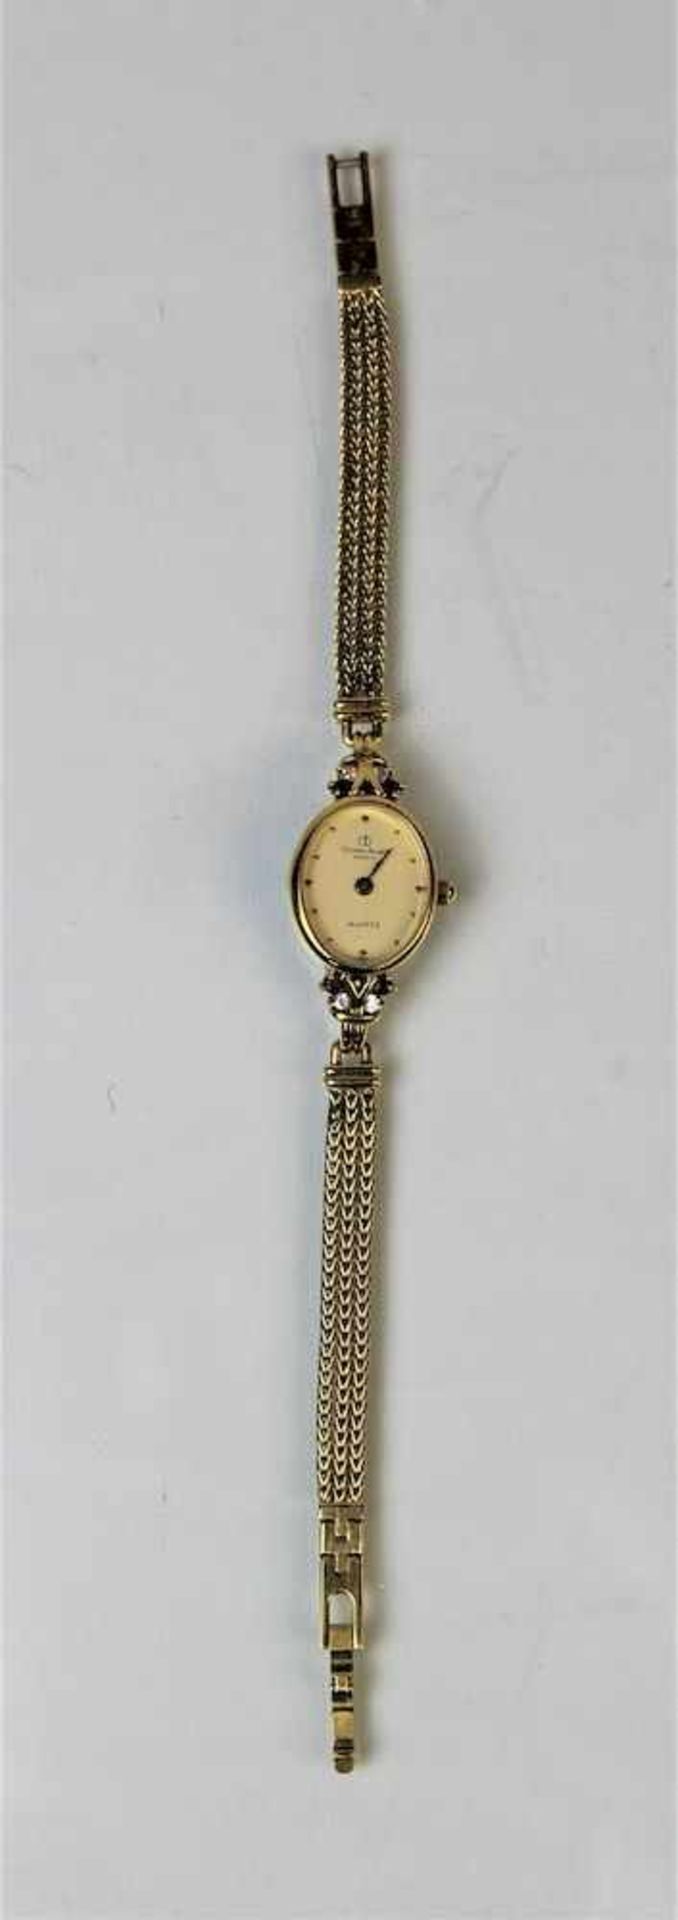 Christian Bernard Damen ArmbanduhrMaße: ca. L. 17 cm